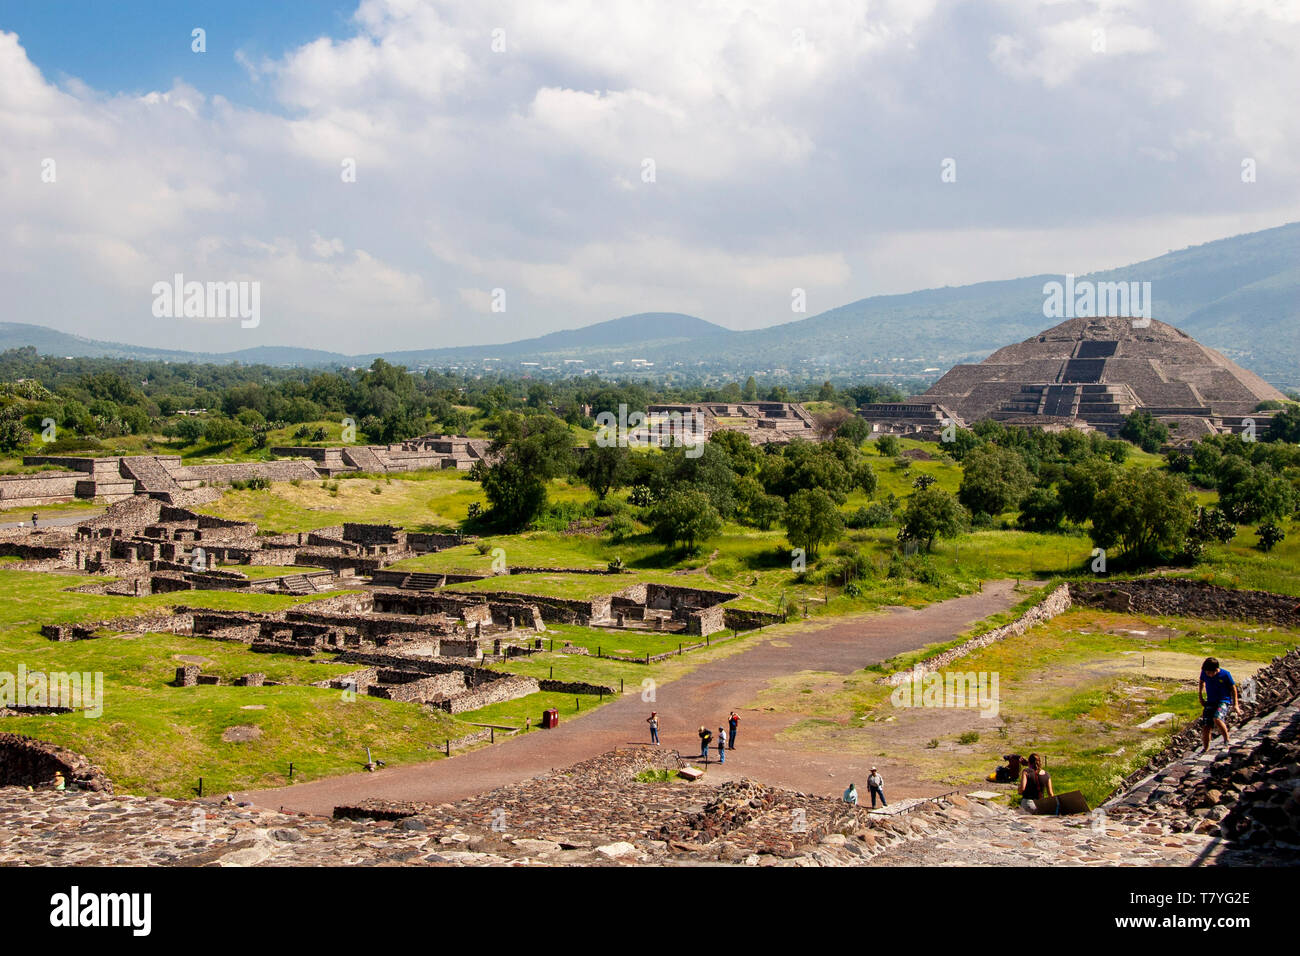 Teotihuacan è la Piramide della Luna. Teotihuacán è un messicano grande complesso archeologico situato a nord-est di Città del Messico. Foto Stock